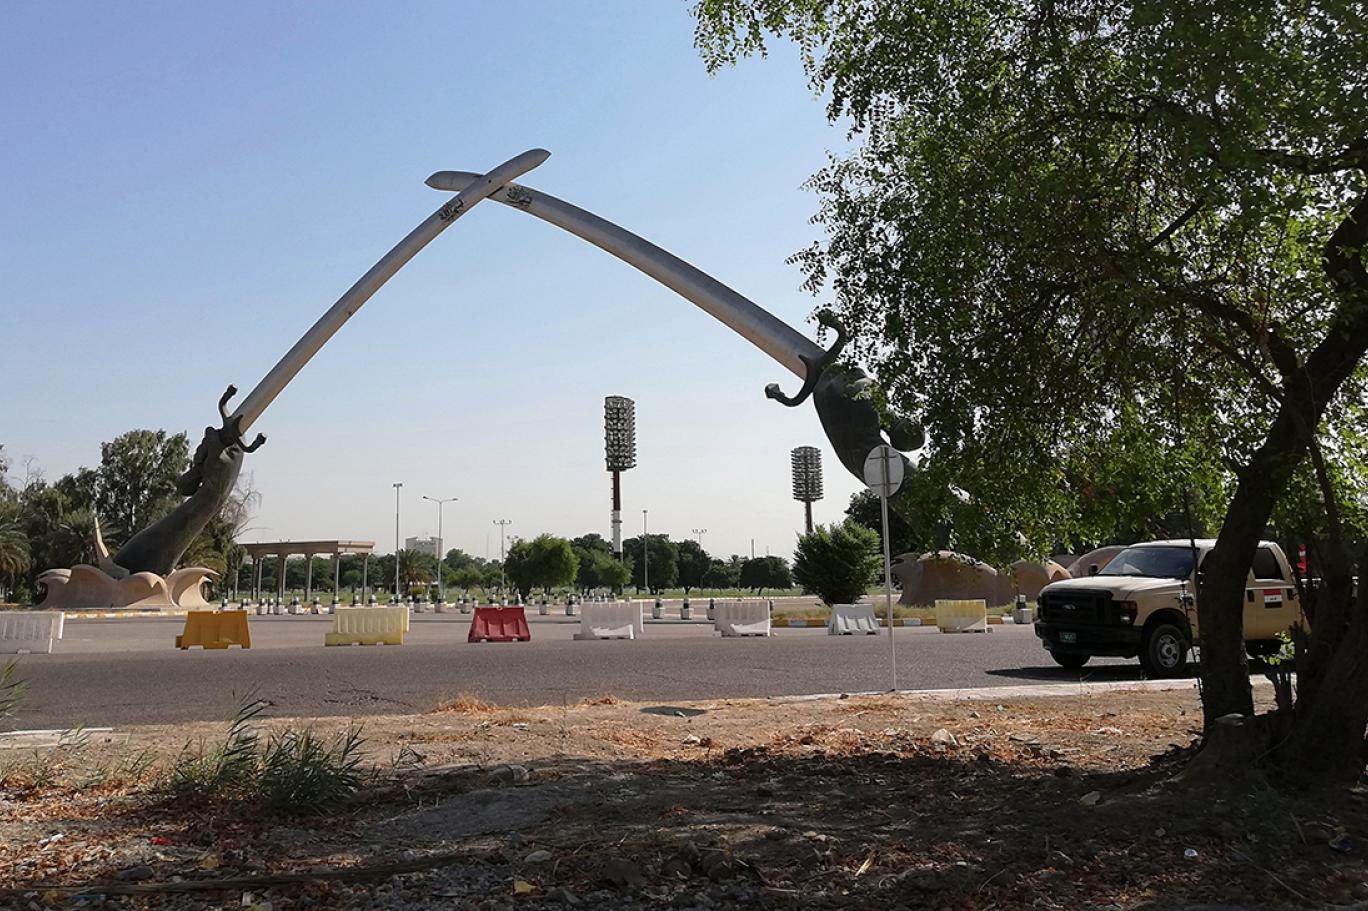 السفارة الأمريكية في بغداد تطلق صافرات الإنذار بعد رصد طائرة مسيّرة بسماء الخضراء